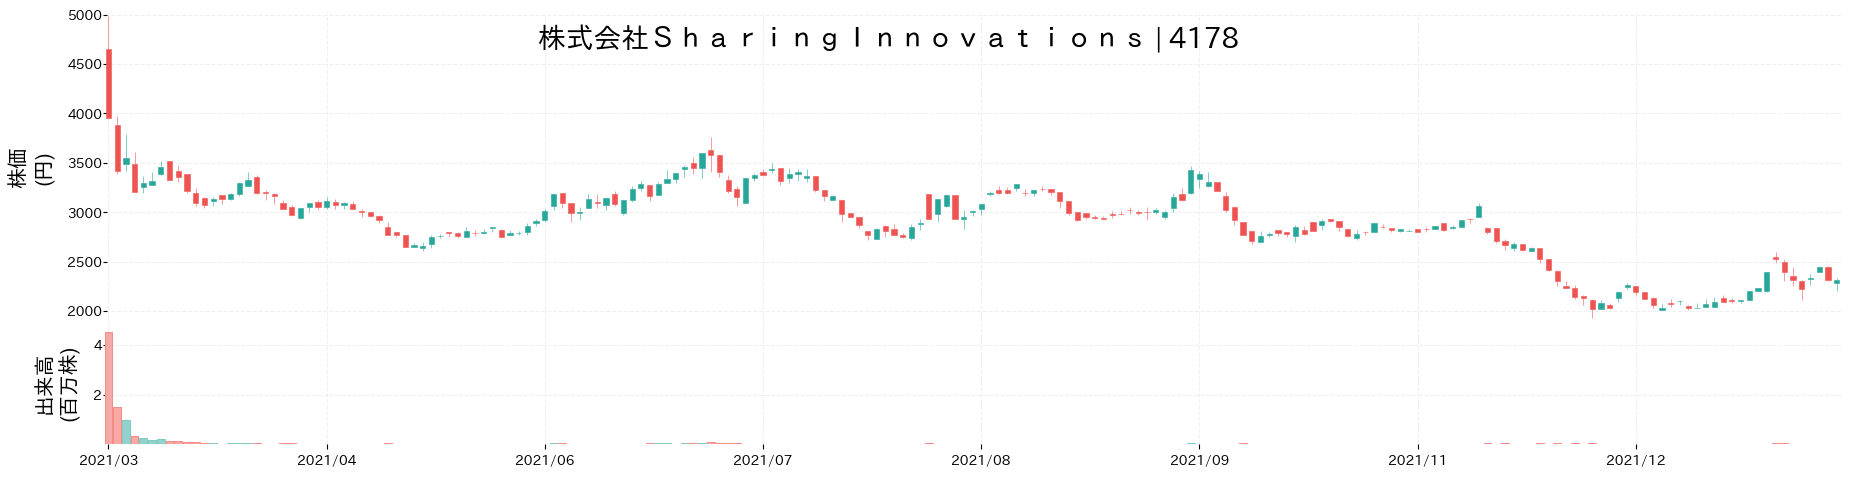 Sharing Innovationsの株価推移(2021)